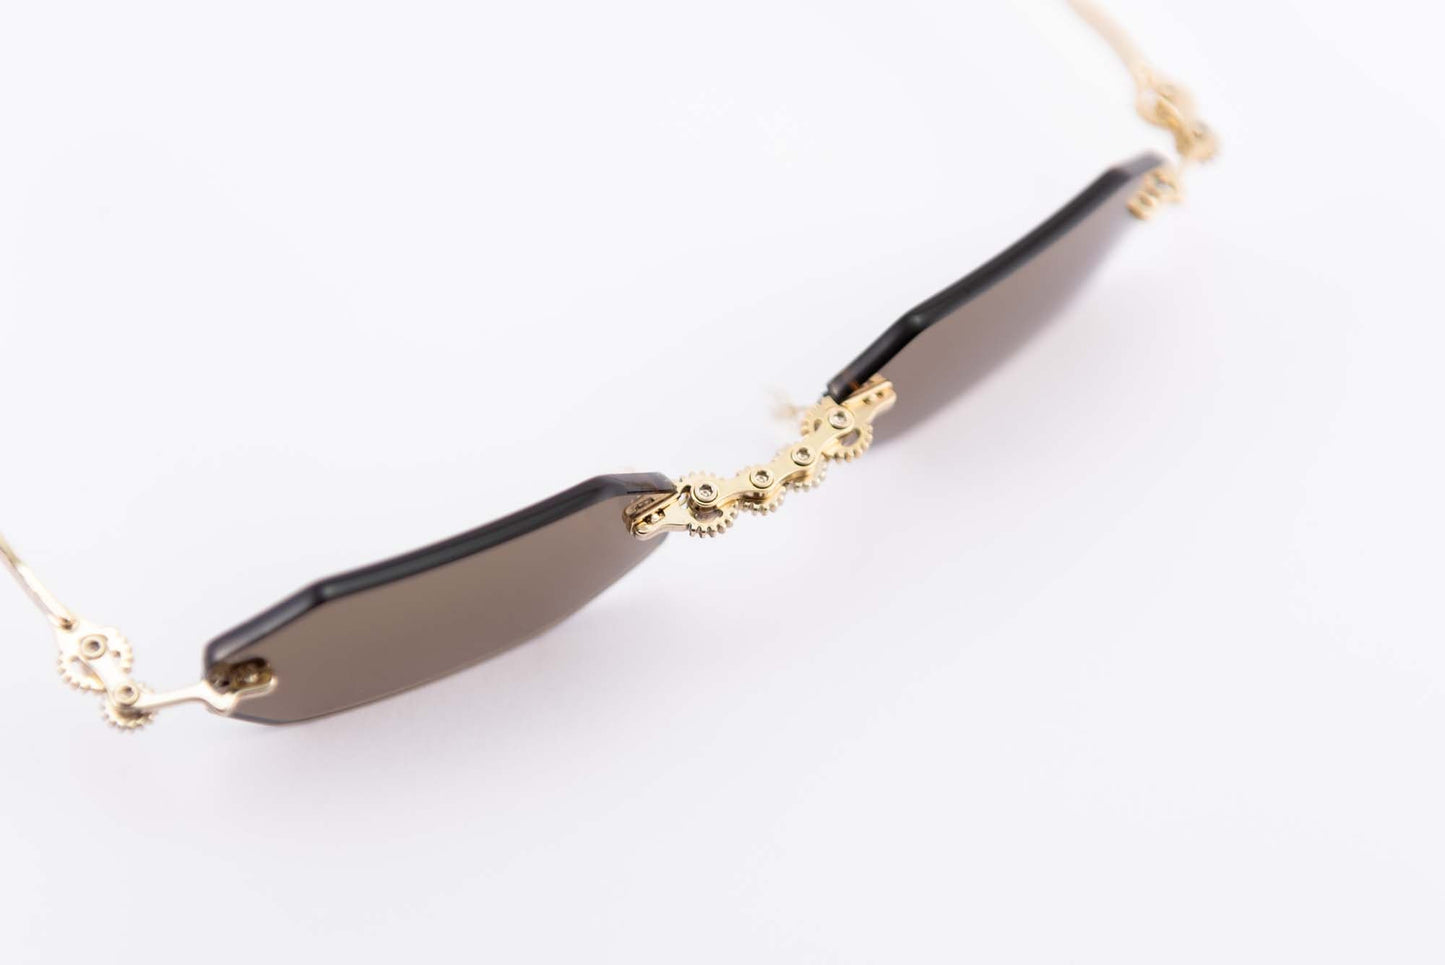 Kuboraum Occhiali da sole Nero / Metallo / Poligonale Kuboraum Maske H46 GD: occhiale a giorno glasant in metallo oro